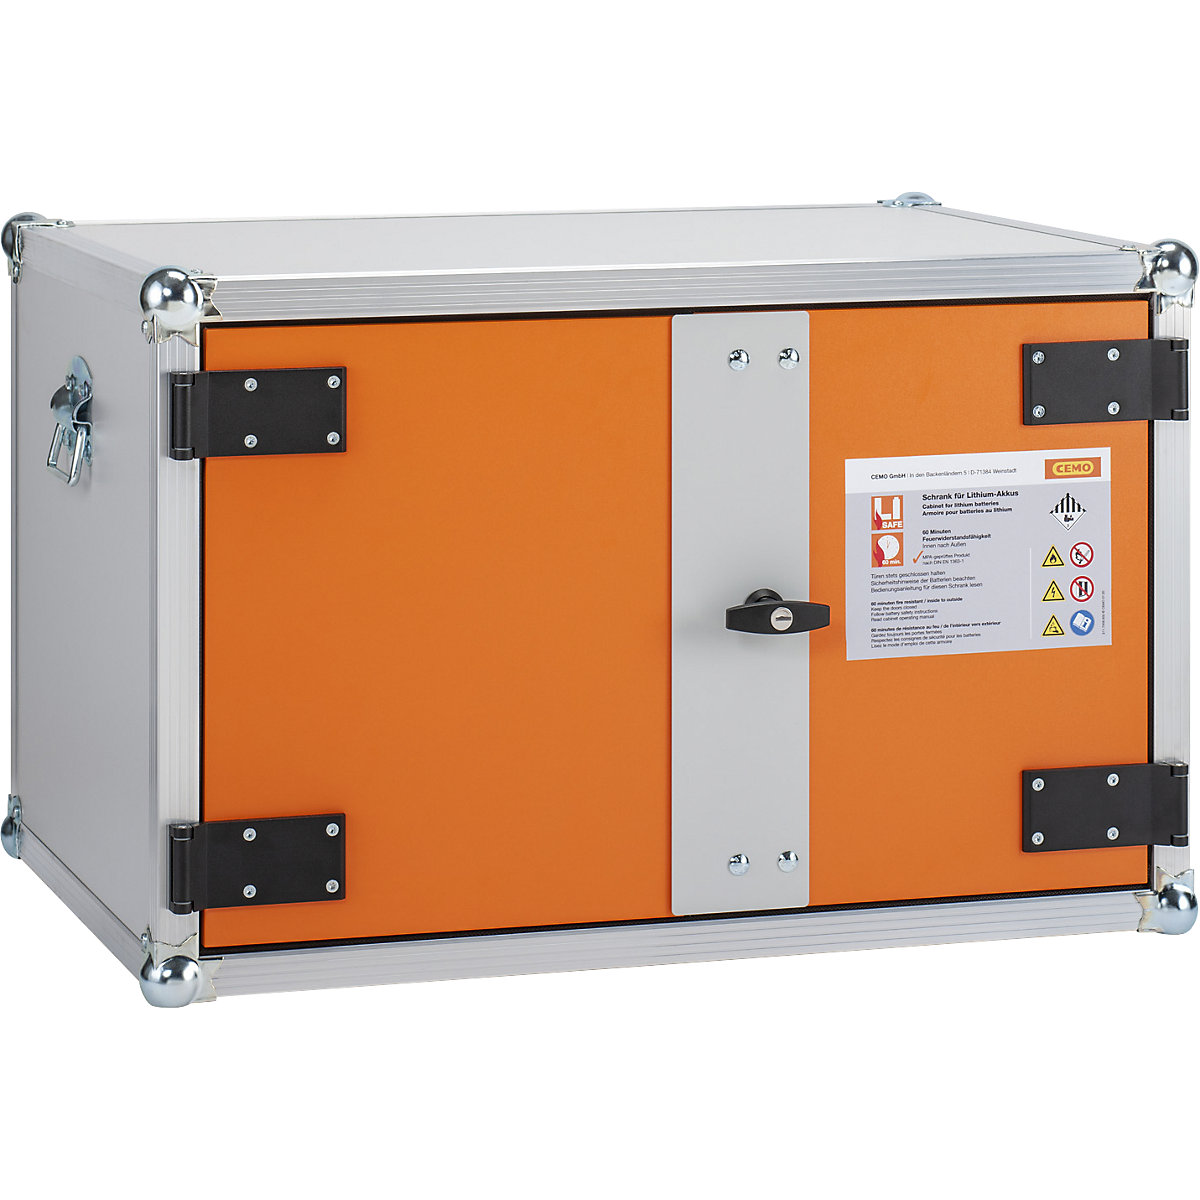 PREMIUM biztonsági akkumulátortöltő szekrény – CEMO